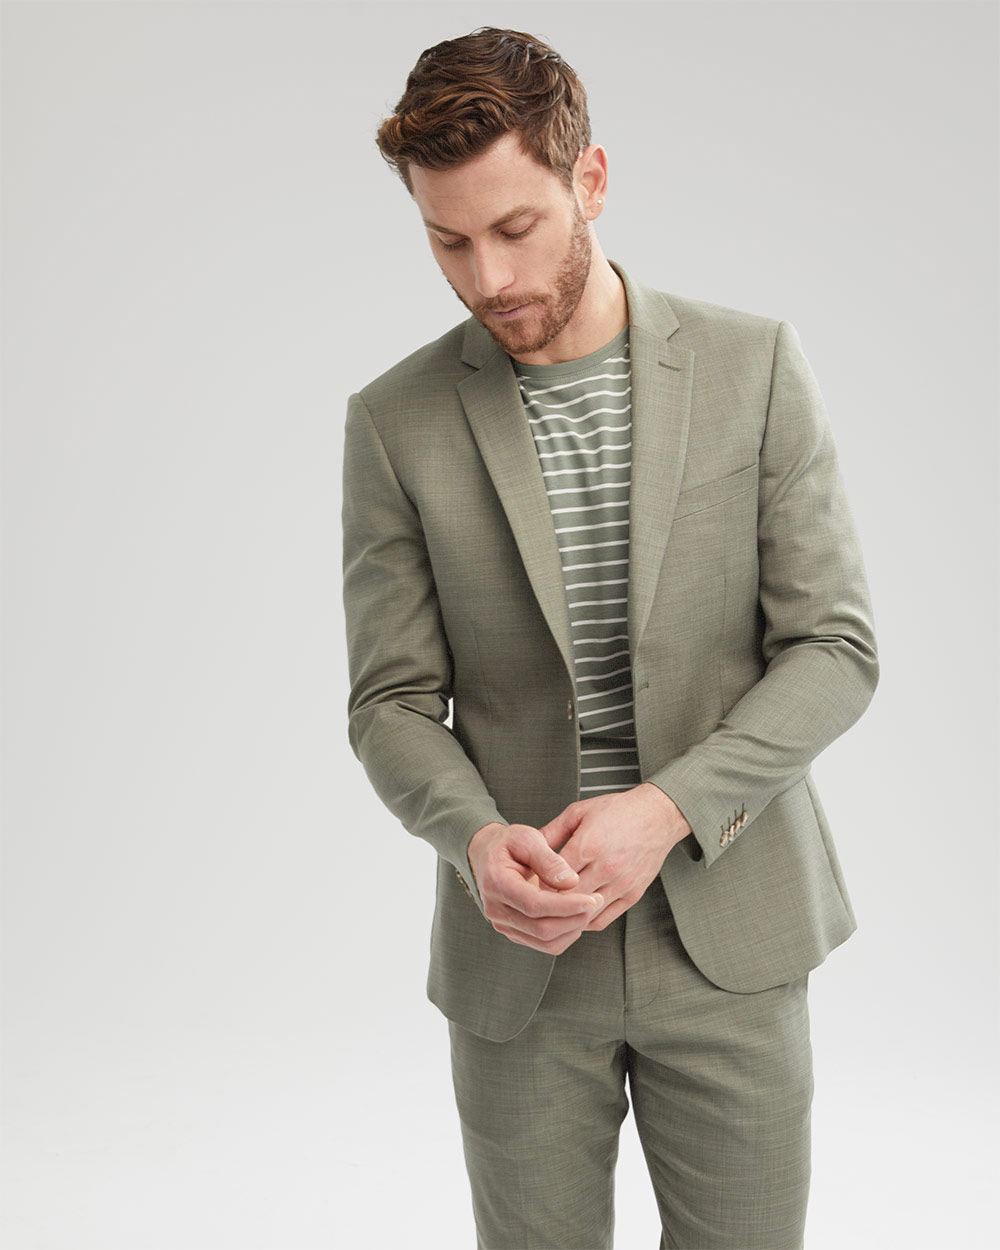 Men's Suits – Extra Slim, Slim & Classic Fit Suit Ensembles - Express